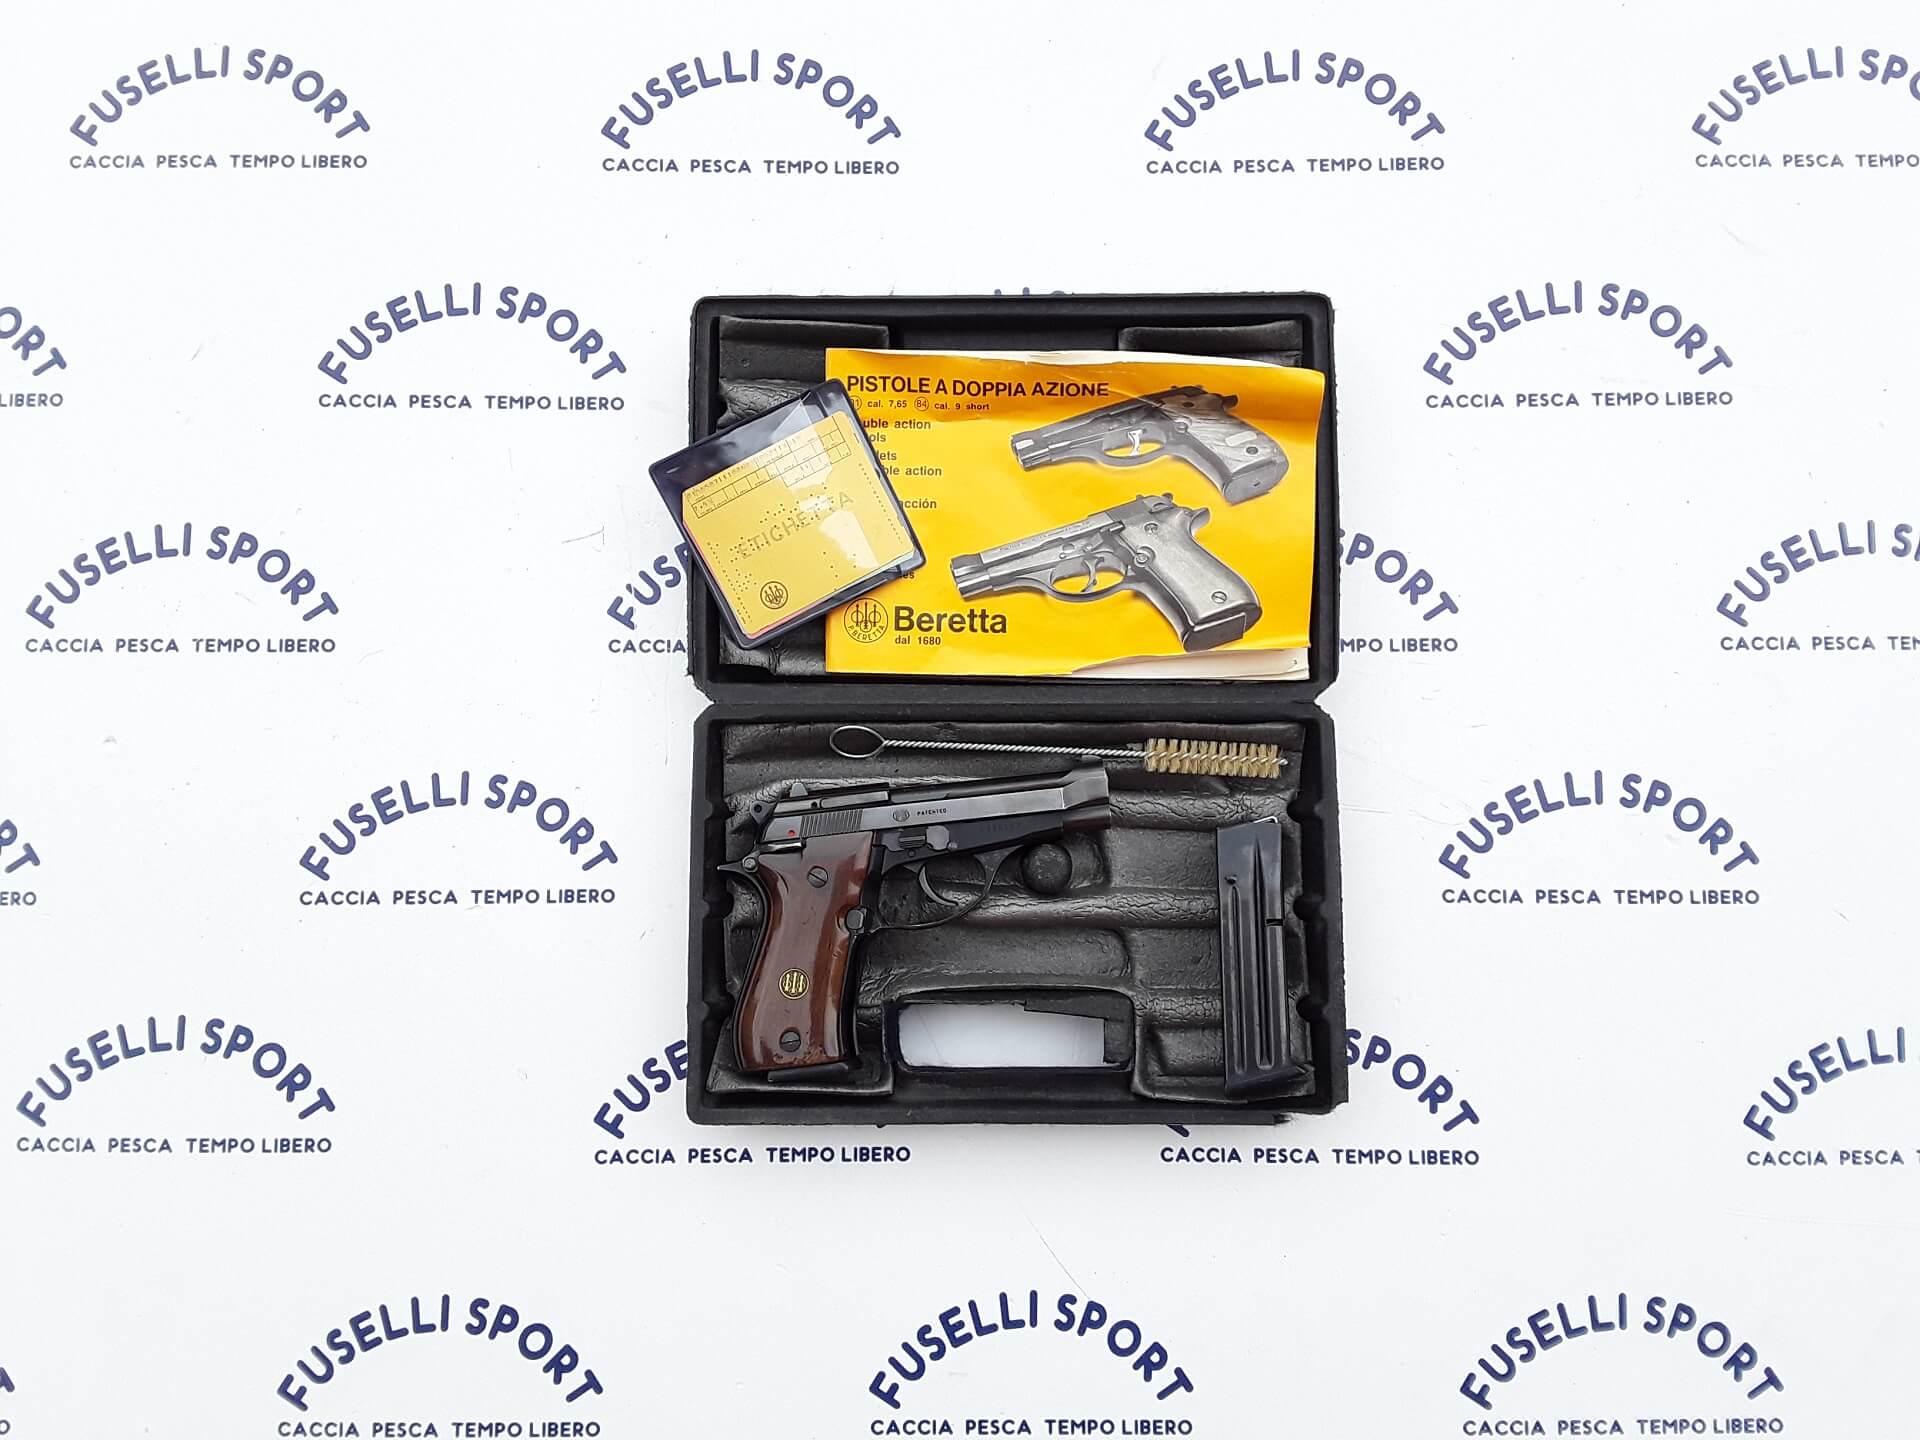 Pistola semiautomatica Beretta modello 81B calibro 7,65 completa di valigetta con 2 caricatori buone condizioni €200